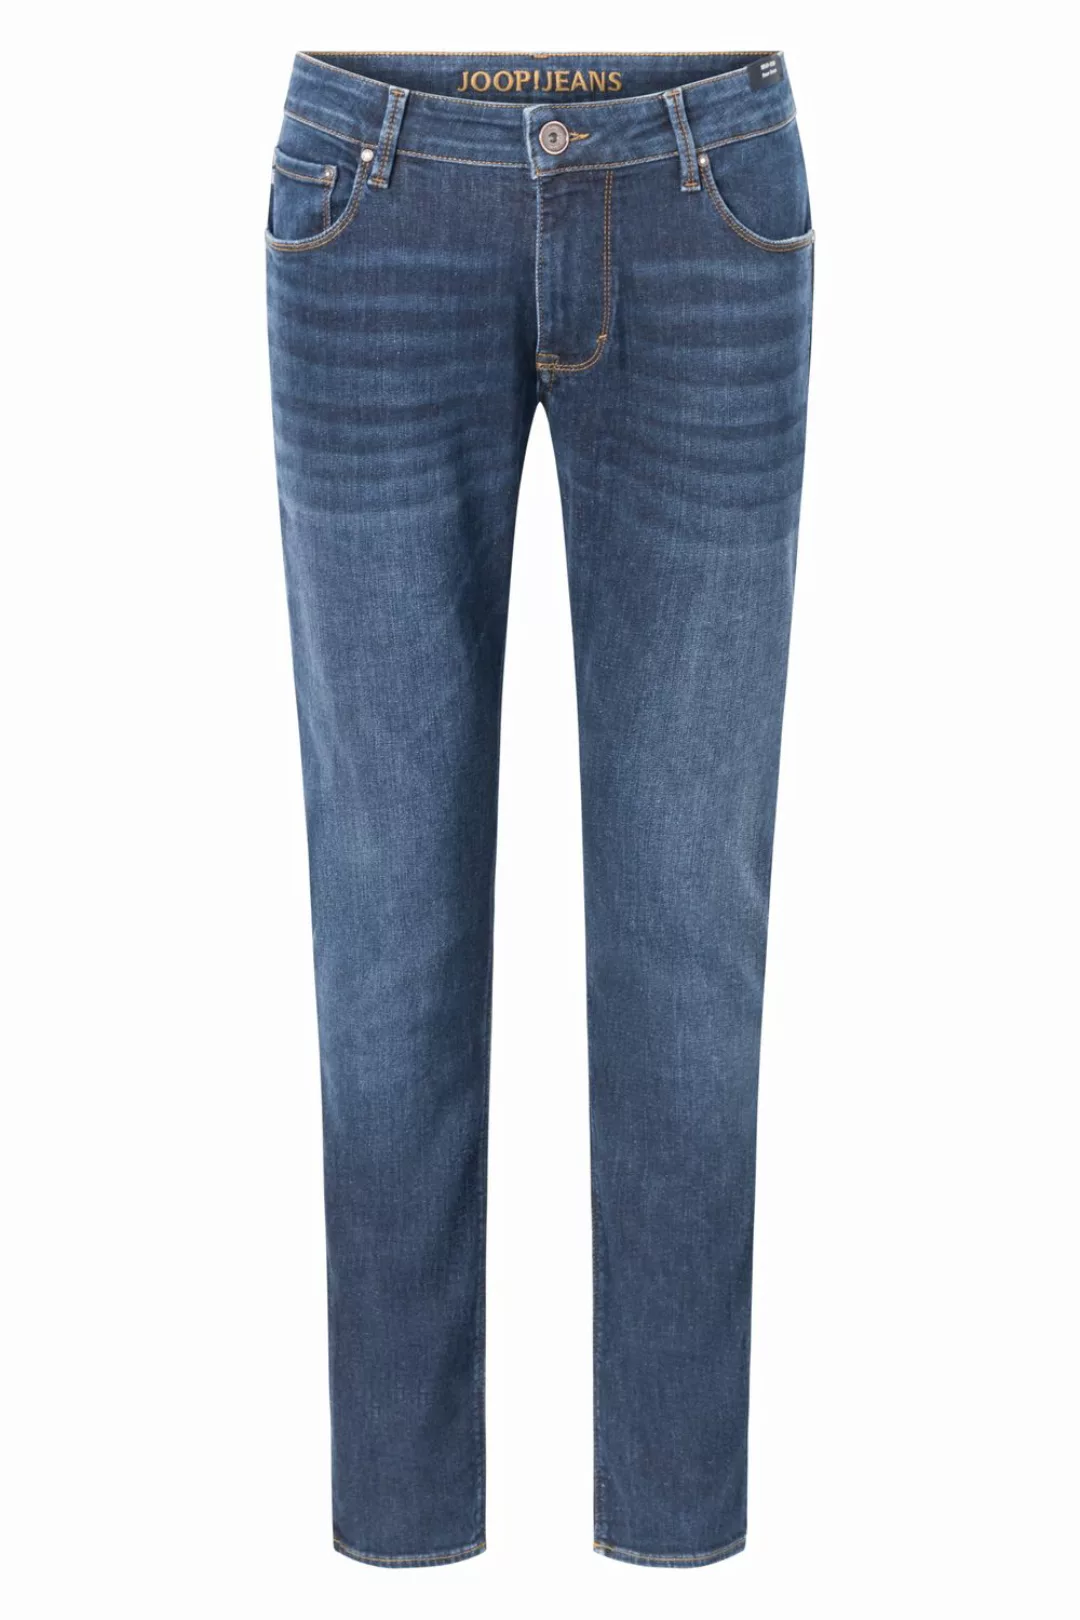 Joop! Herren Jeans Stephen - Slim Fit - Blau - Medium Blue Denim günstig online kaufen